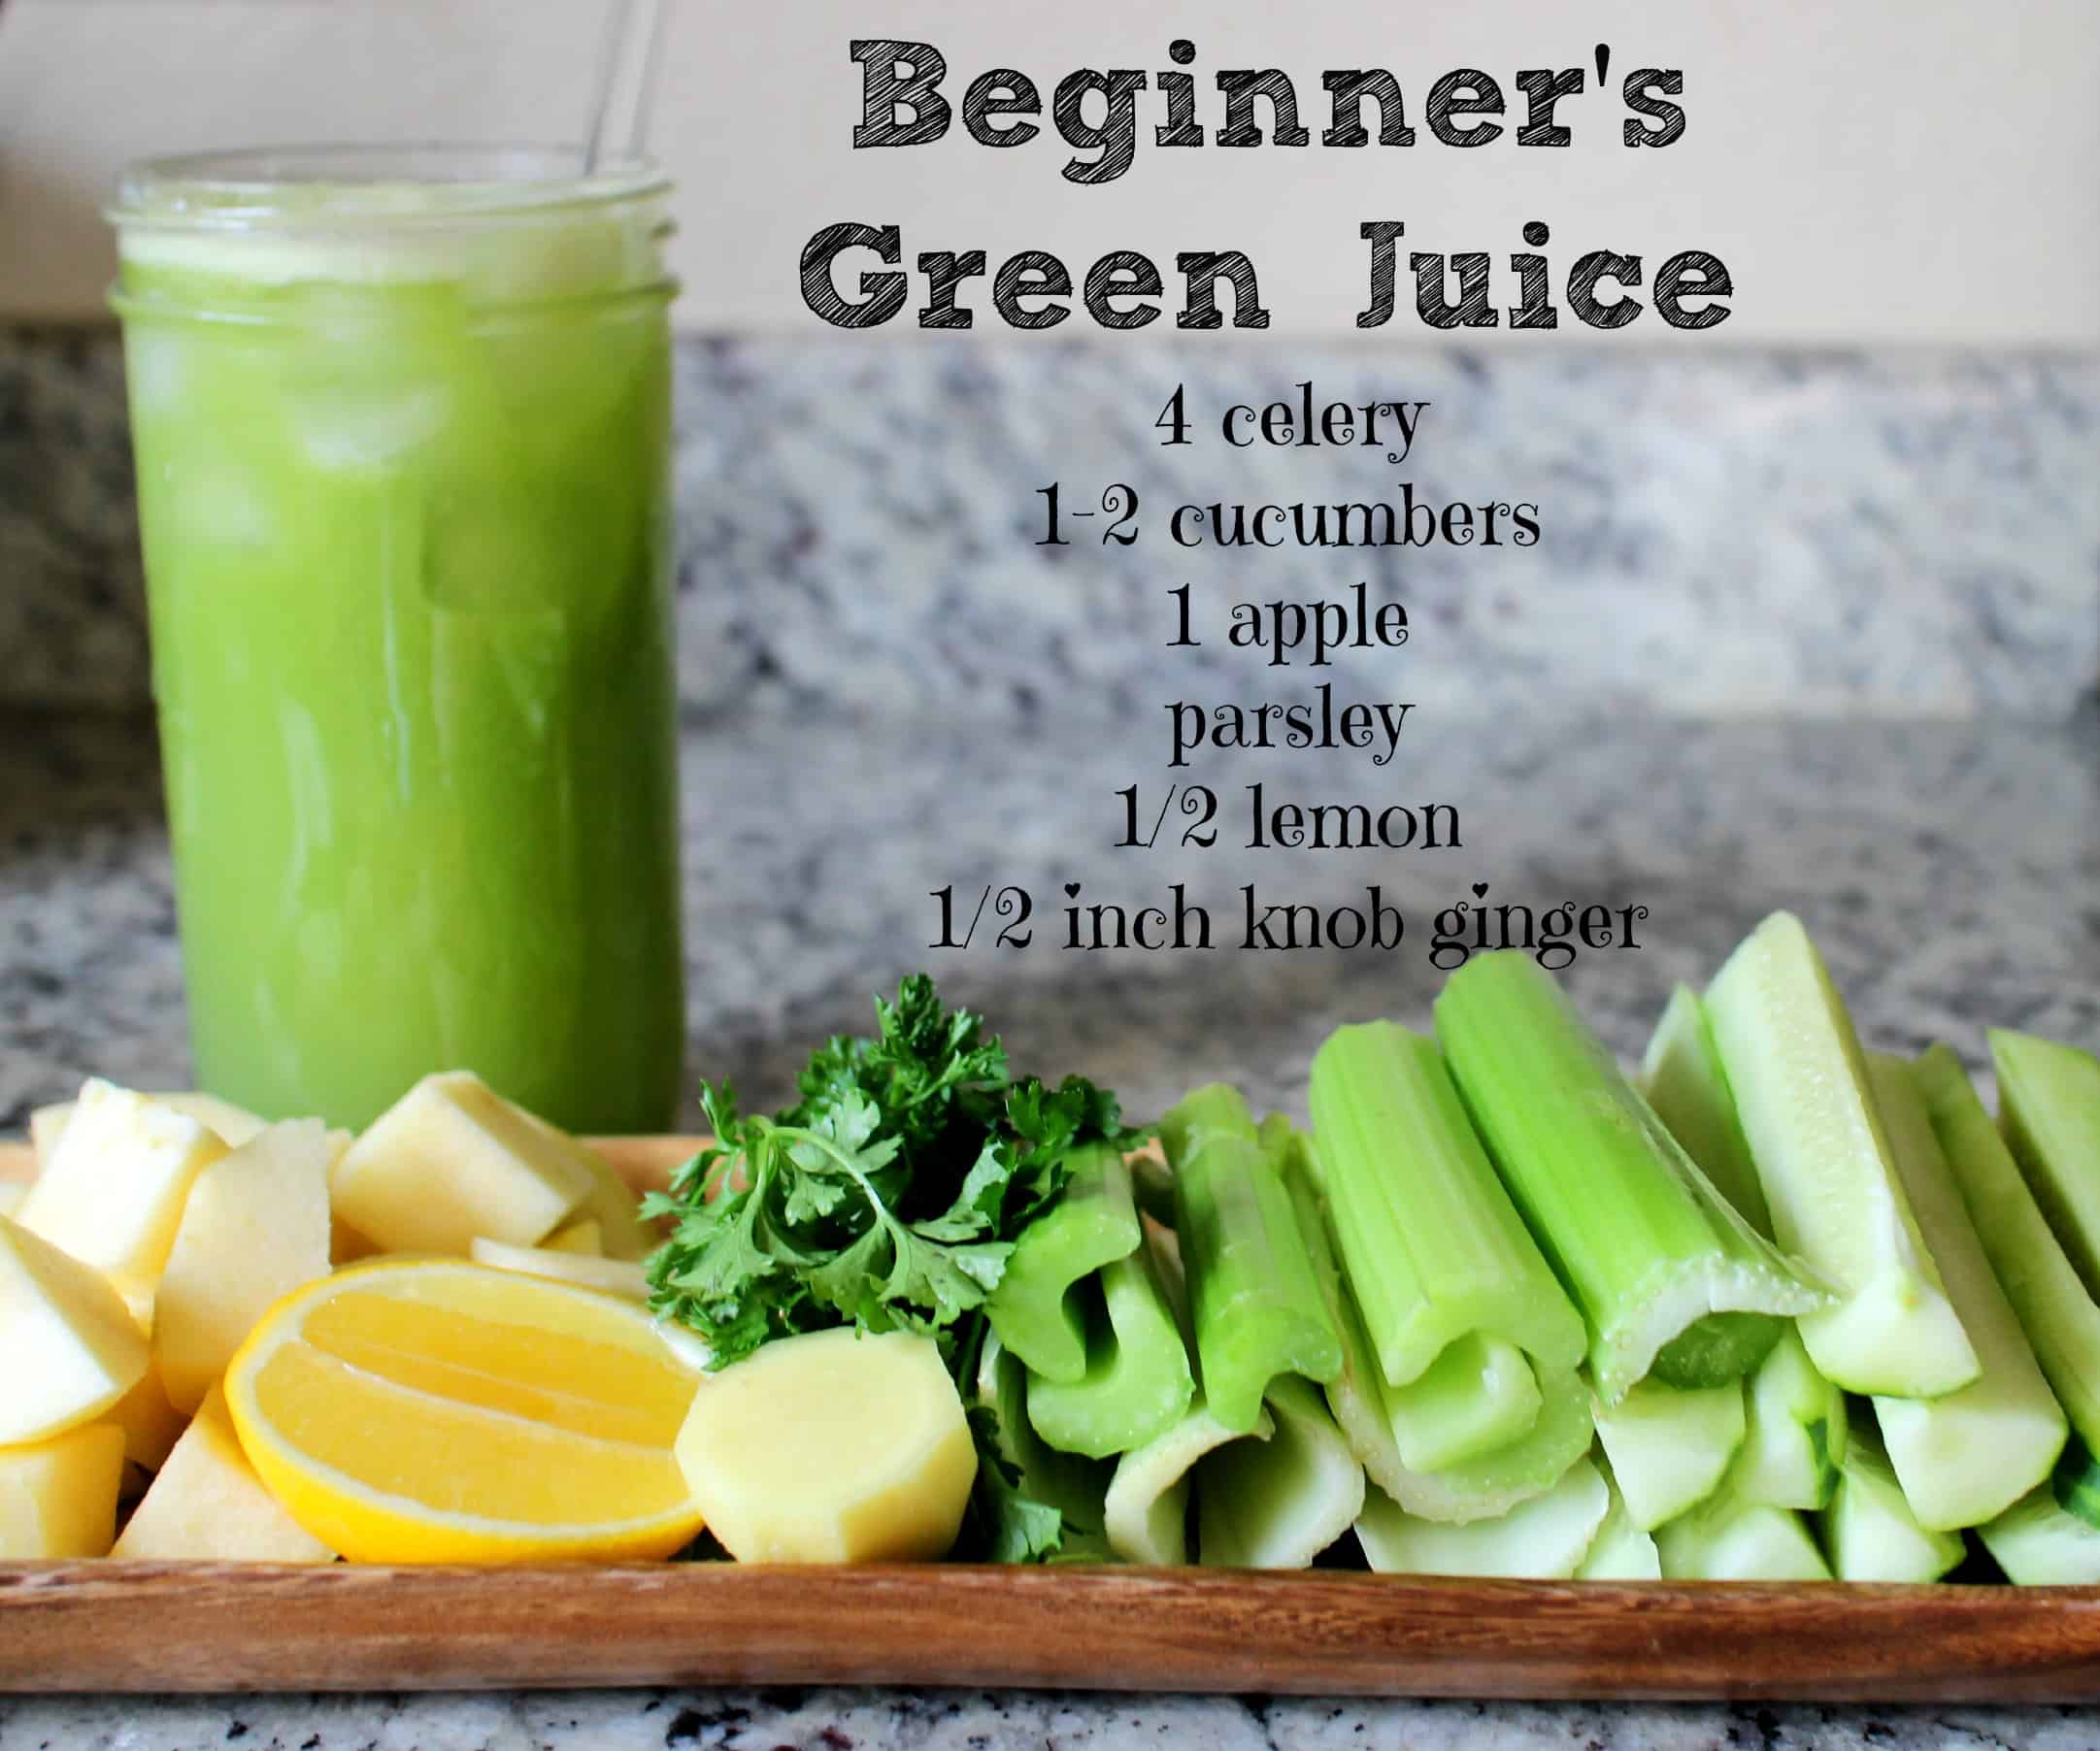 Beginner's green juice recipe